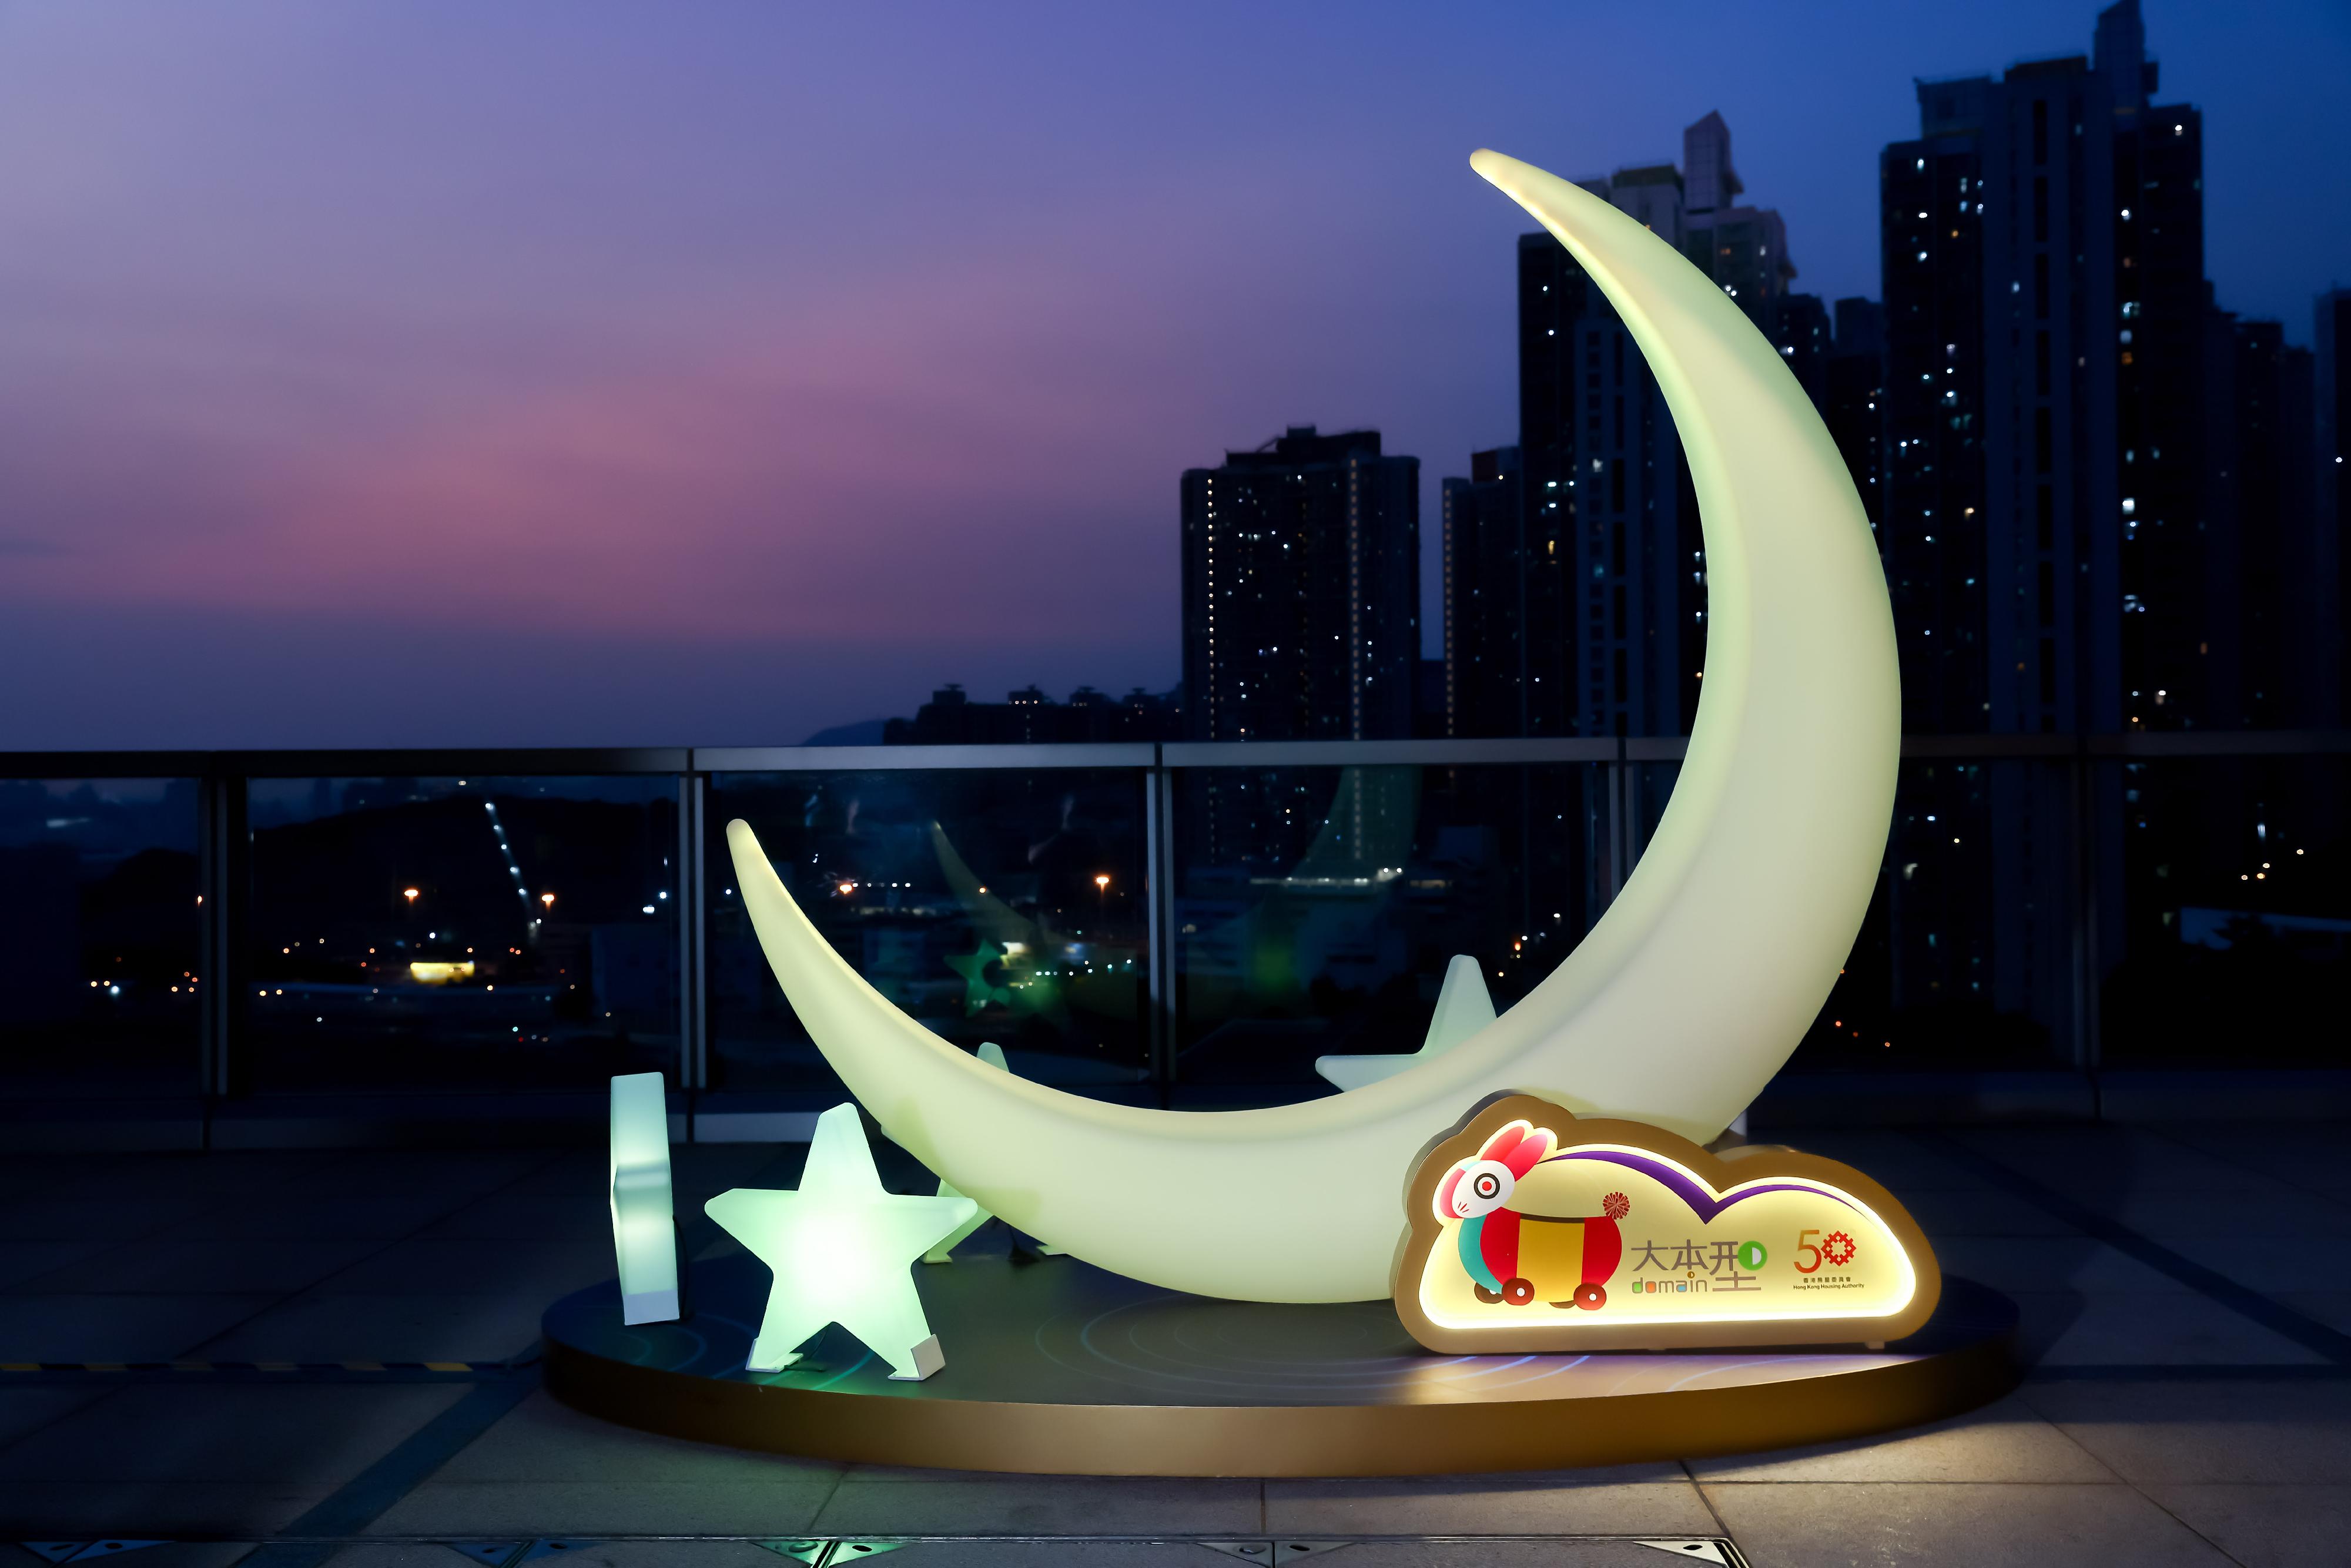 香港房屋委员会（房委会）商场投入「香港夜缤纷」举办中秋节暨庆祝国庆日推广活动。图示房委会辖下东九龙油塘的旗舰商场「大本型」天台空中花园的「团圆星月椅」。